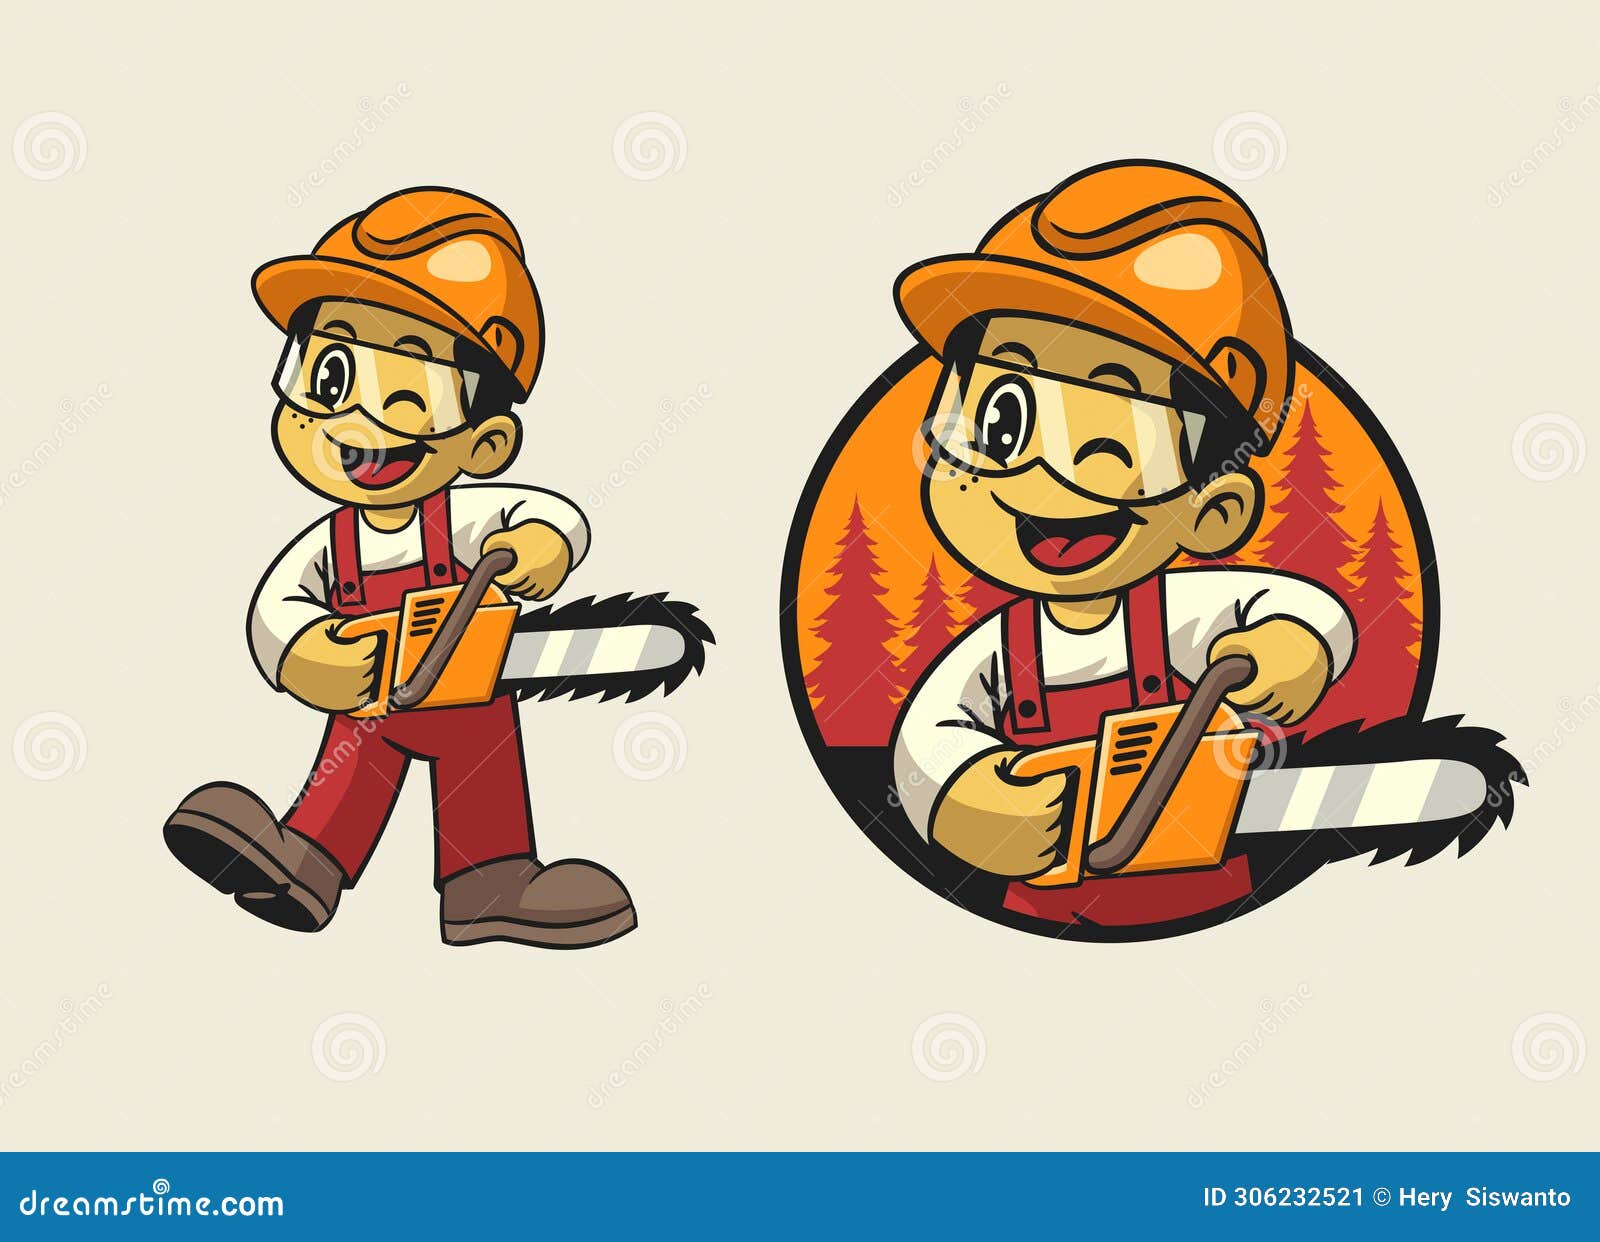 cartoon of logger boy worker mascot